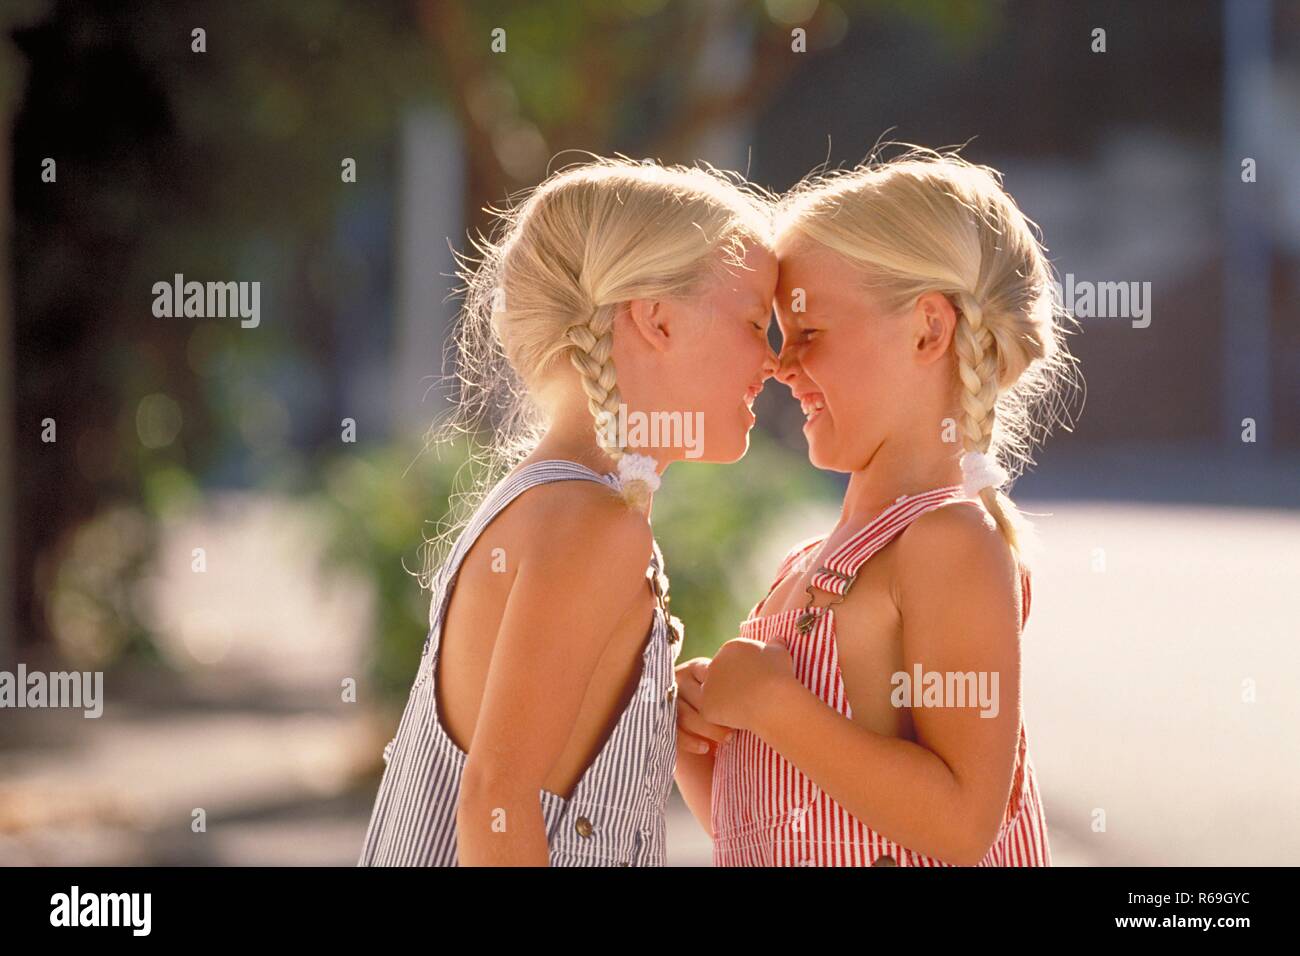 Ritratto, Halbfigur, Profil von zwei lachenden 5 Jahre alten Zwillings-Maedchen mit blondn geflochtenen Zoepfen bekleidet mit blau und rot-weiss gestreiften Latzhosen, die die Nasen aneinander reiben Foto Stock